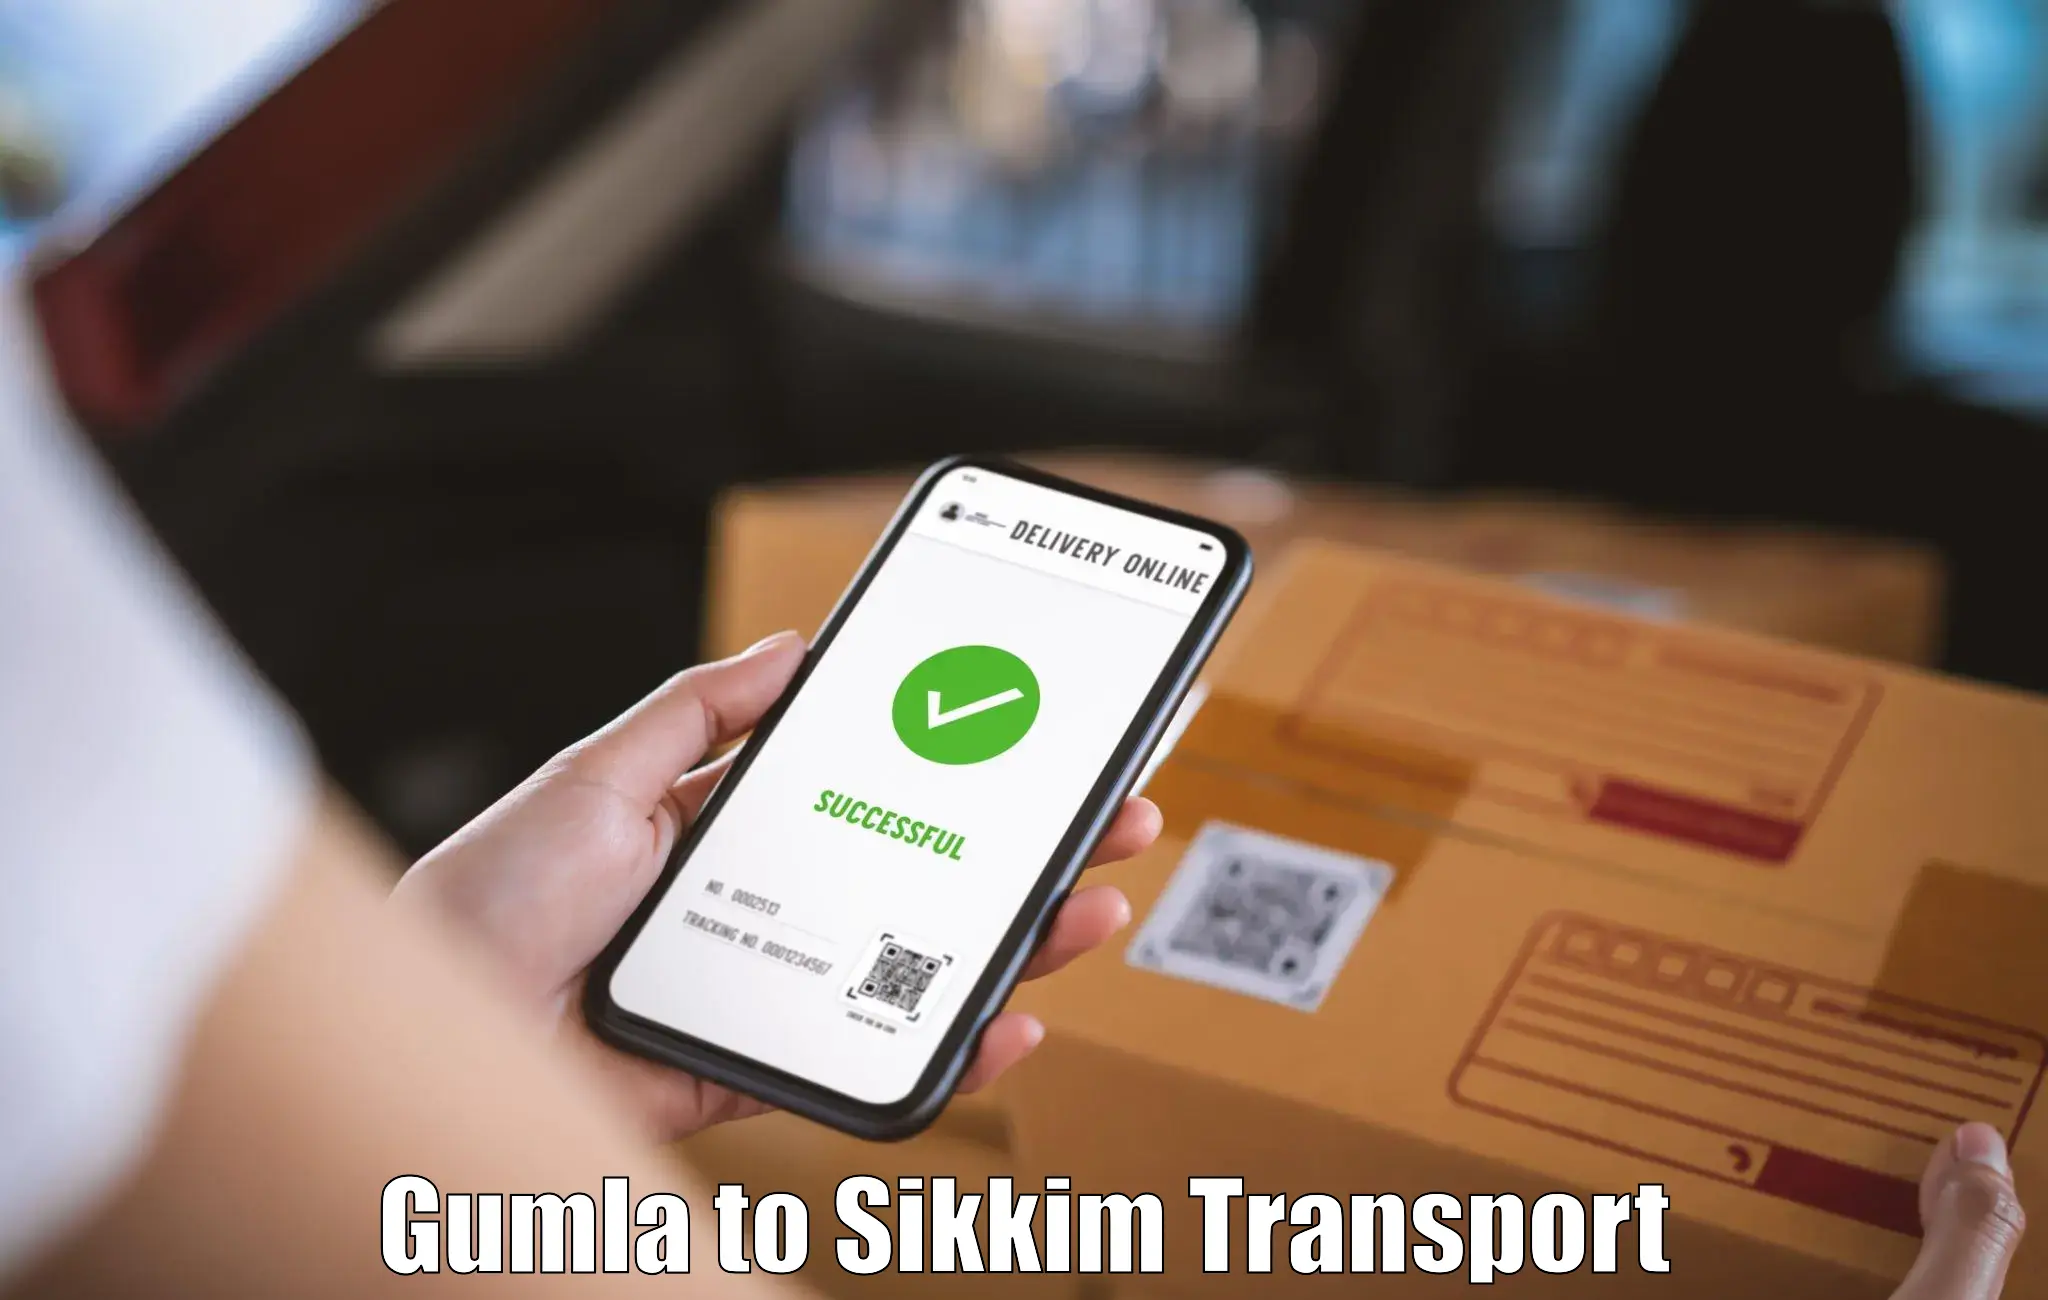 Online transport booking Gumla to Singtam